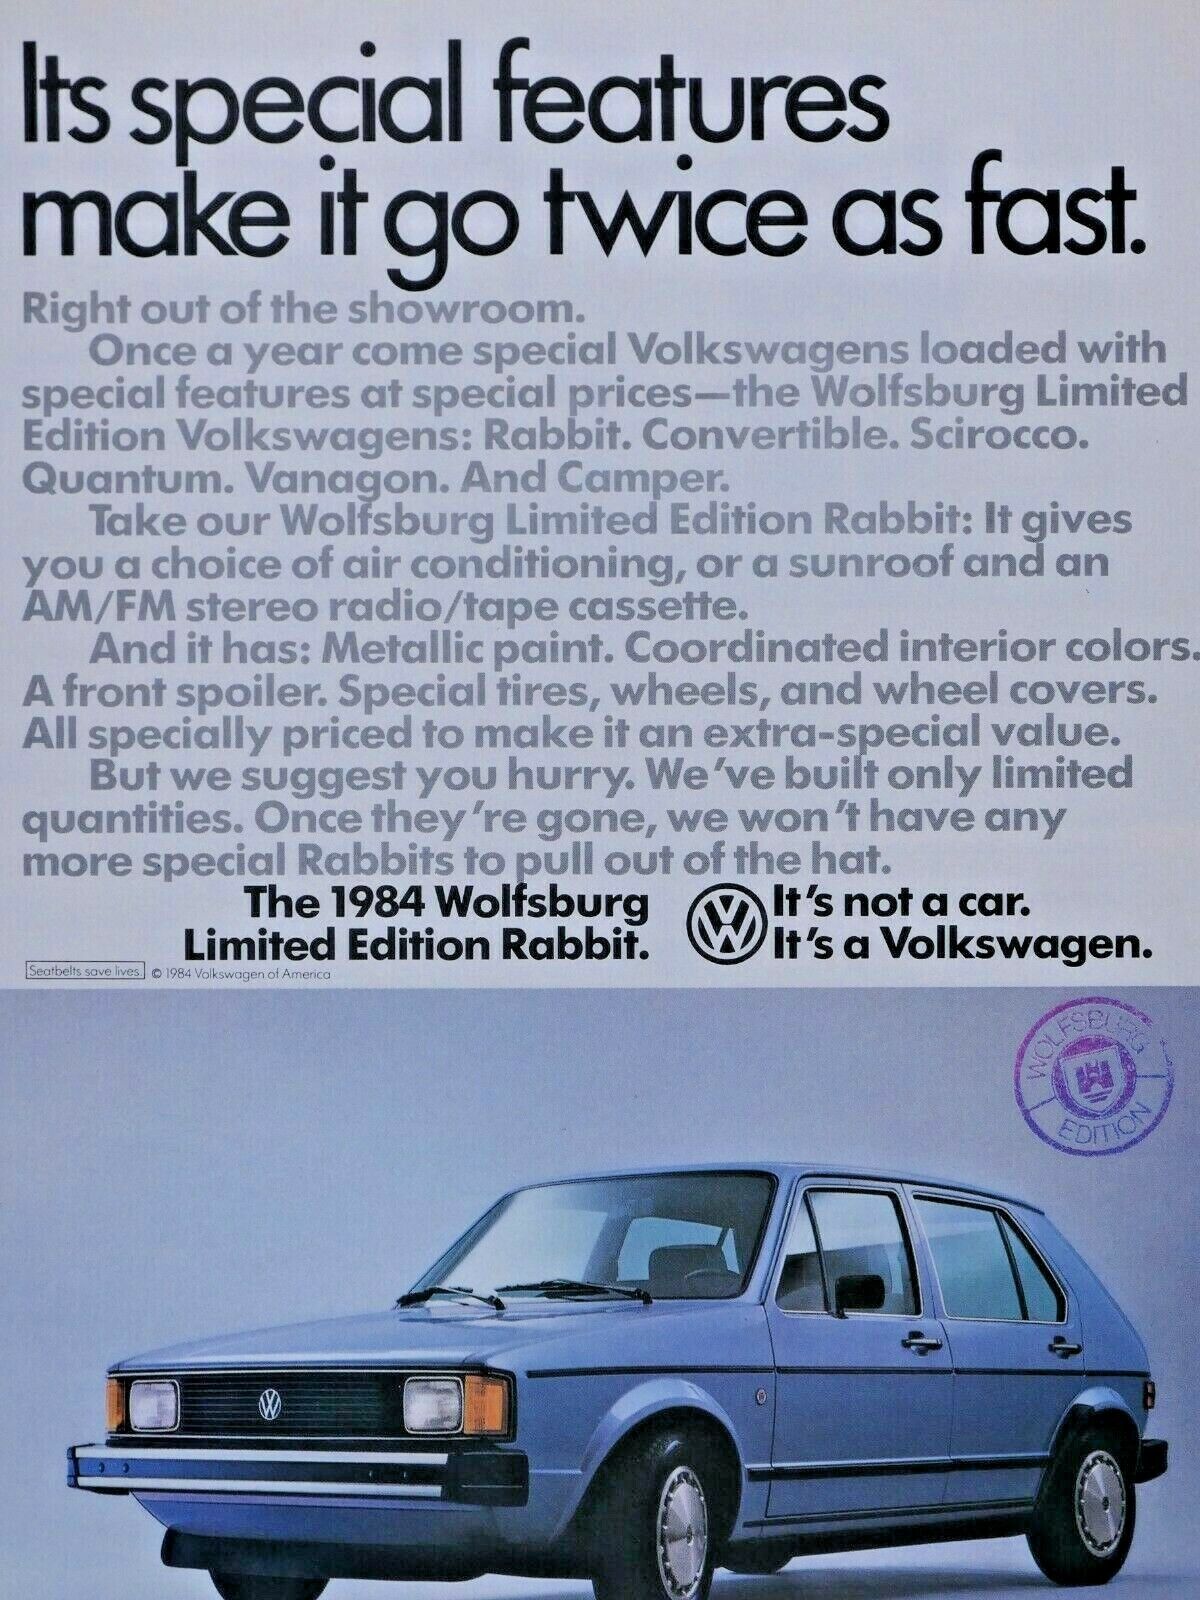 1984 Volkswagen Limited Edition Wolfsburg Rabbit VTG Original Print Ad 8.5 x 11\